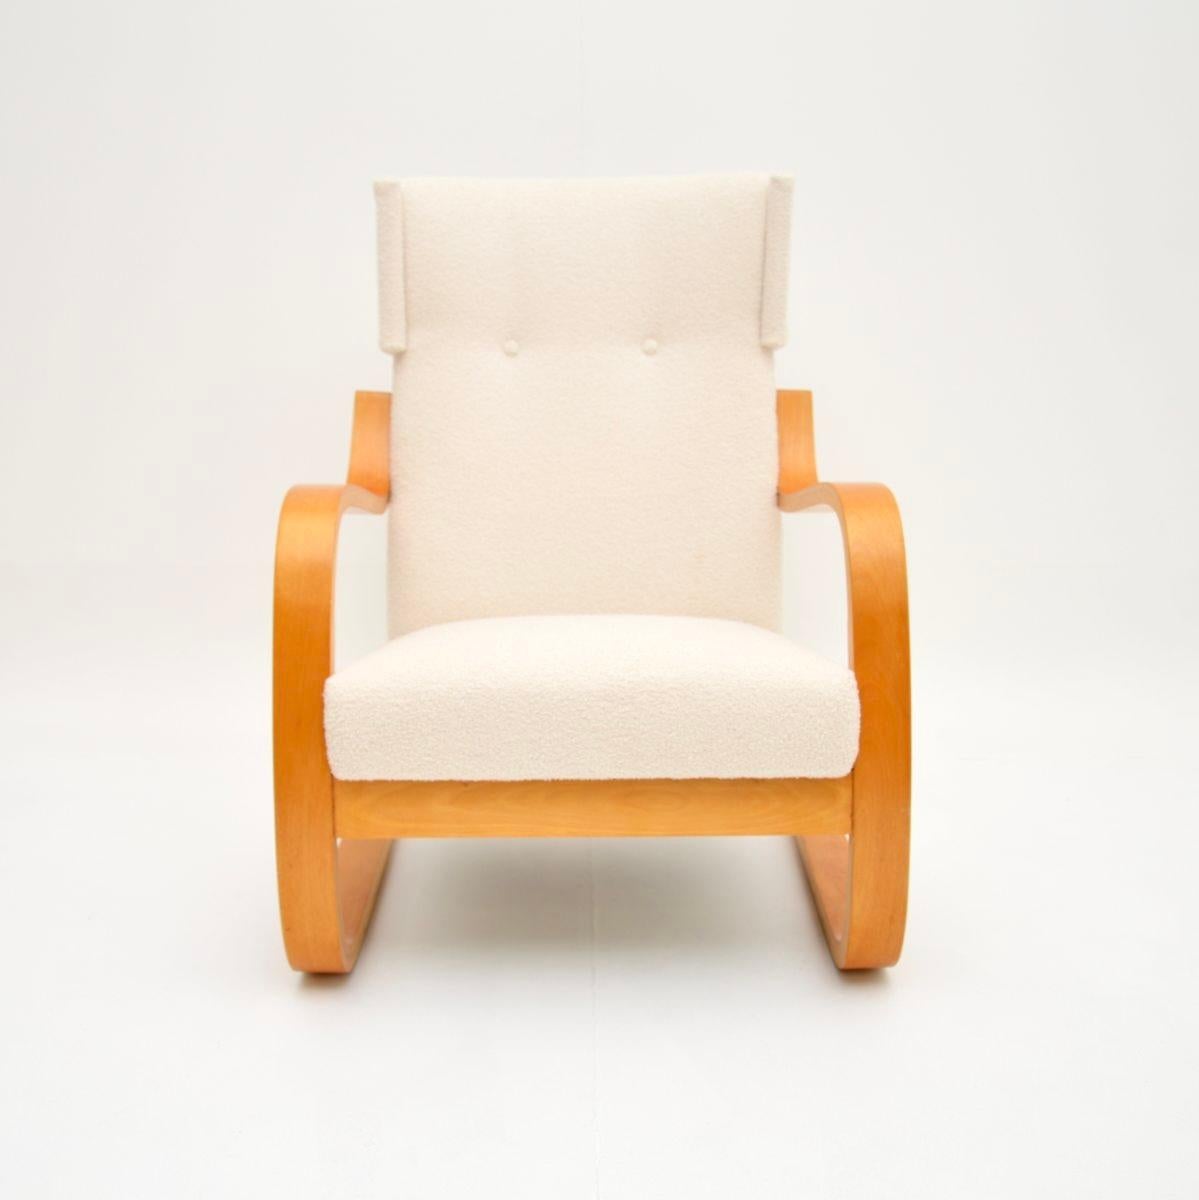 Ein ikonischer und seltener Vintage-Sessel Modell 401 von Alvar Aalto. Es wurde in Finnland von Artek hergestellt und stammt etwa aus den 1970er Jahren.

Es ist von außergewöhnlicher Qualität und äußerst bequem. Die Sitzfläche ist sehr stützend und